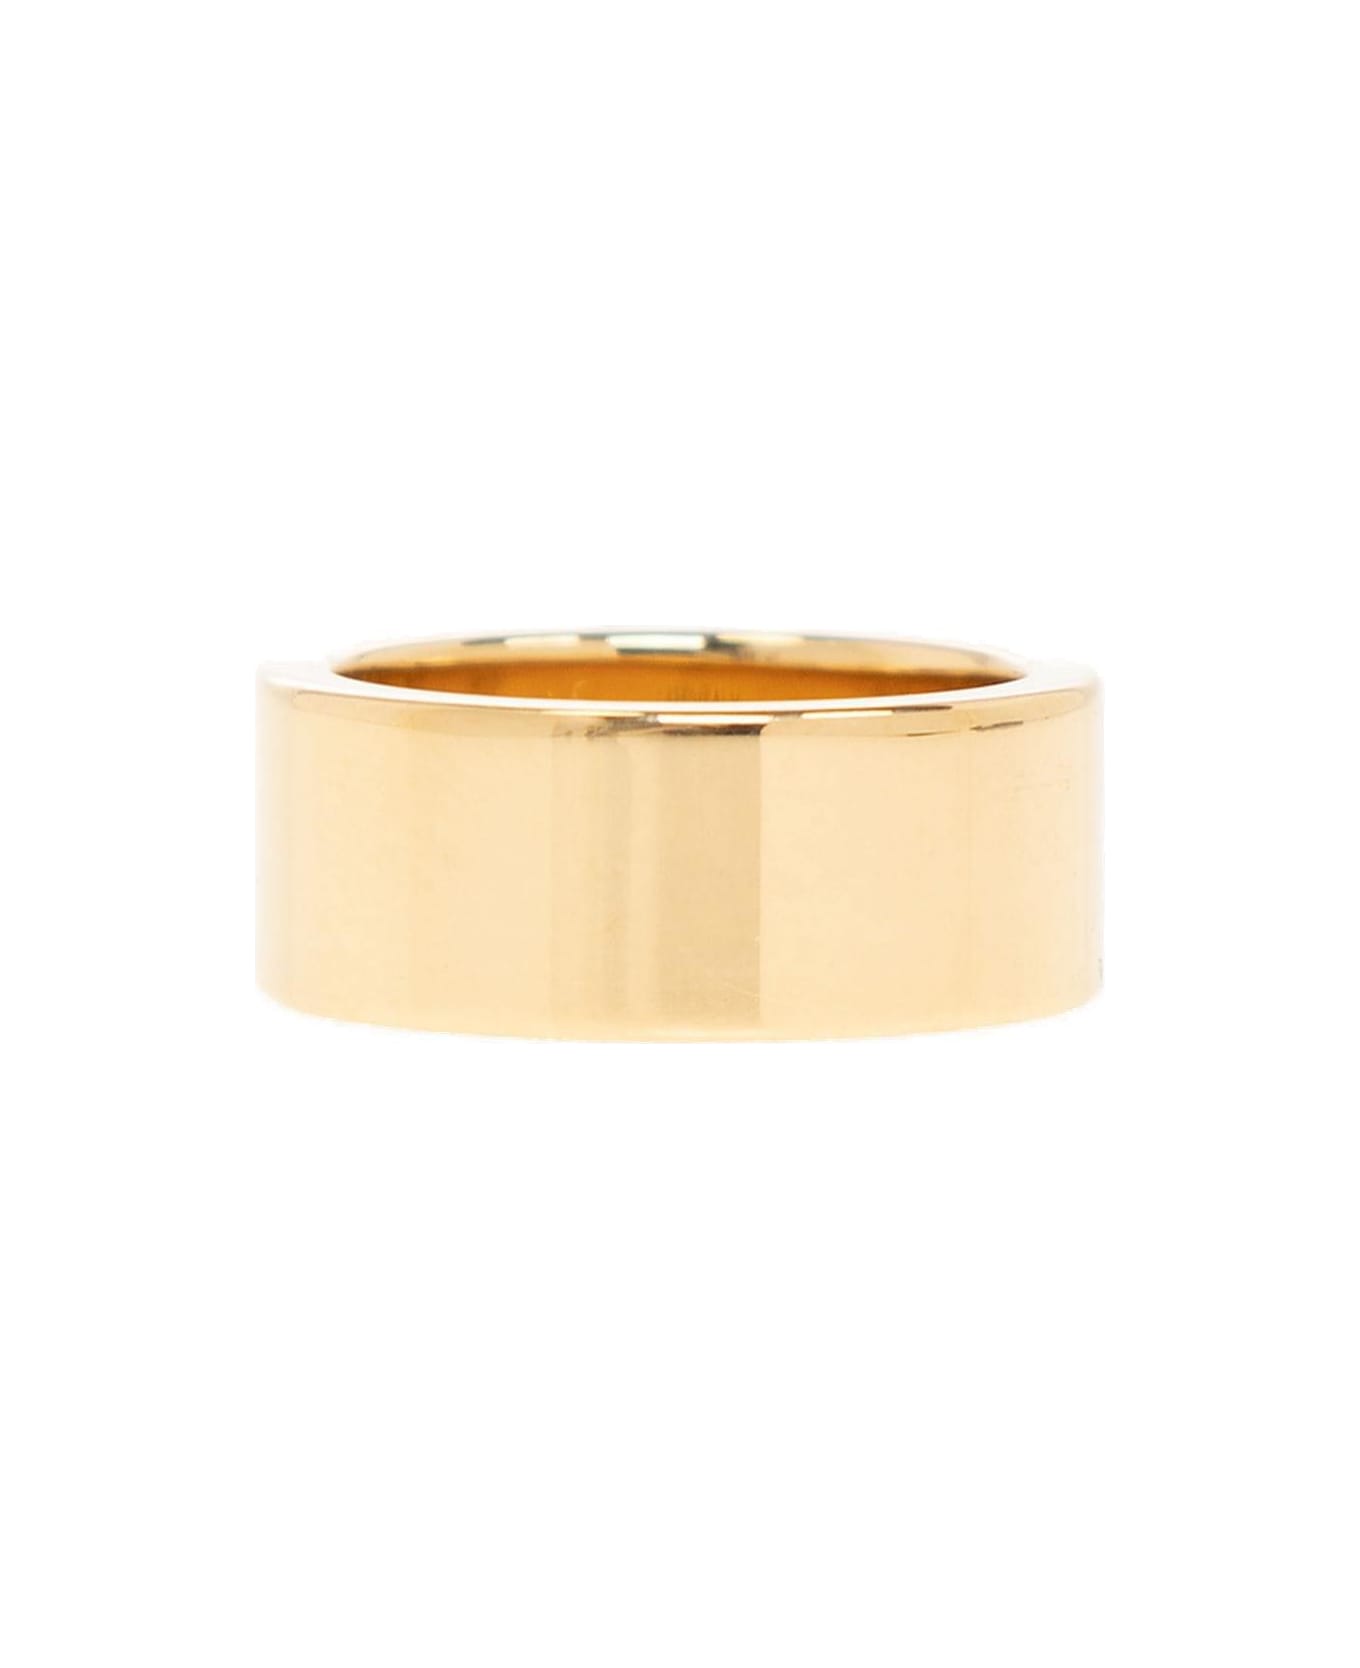 Maison Margiela Logo Engraved Ring - GOLD